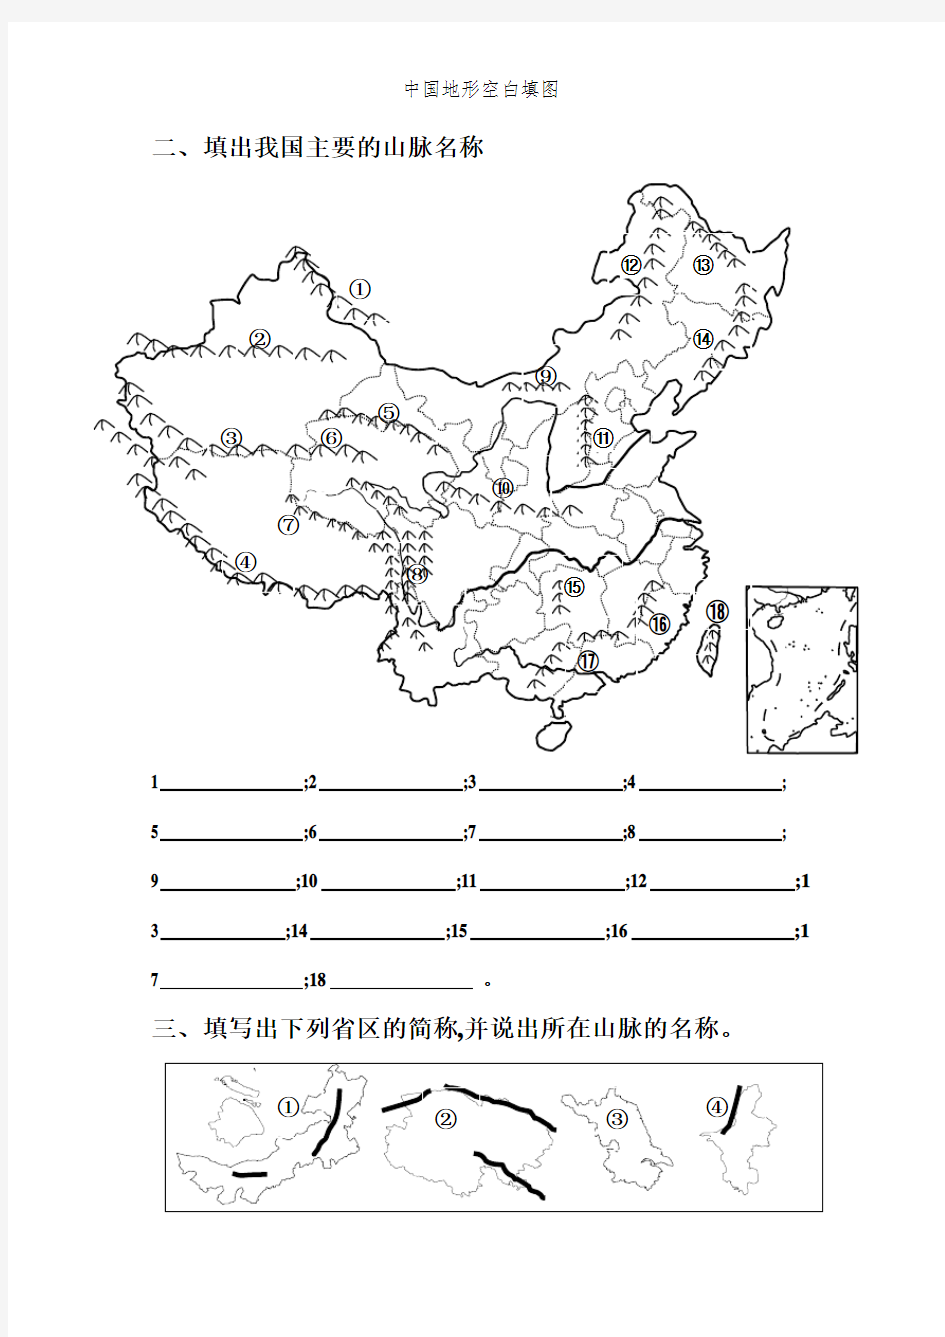 中国地形空白填图